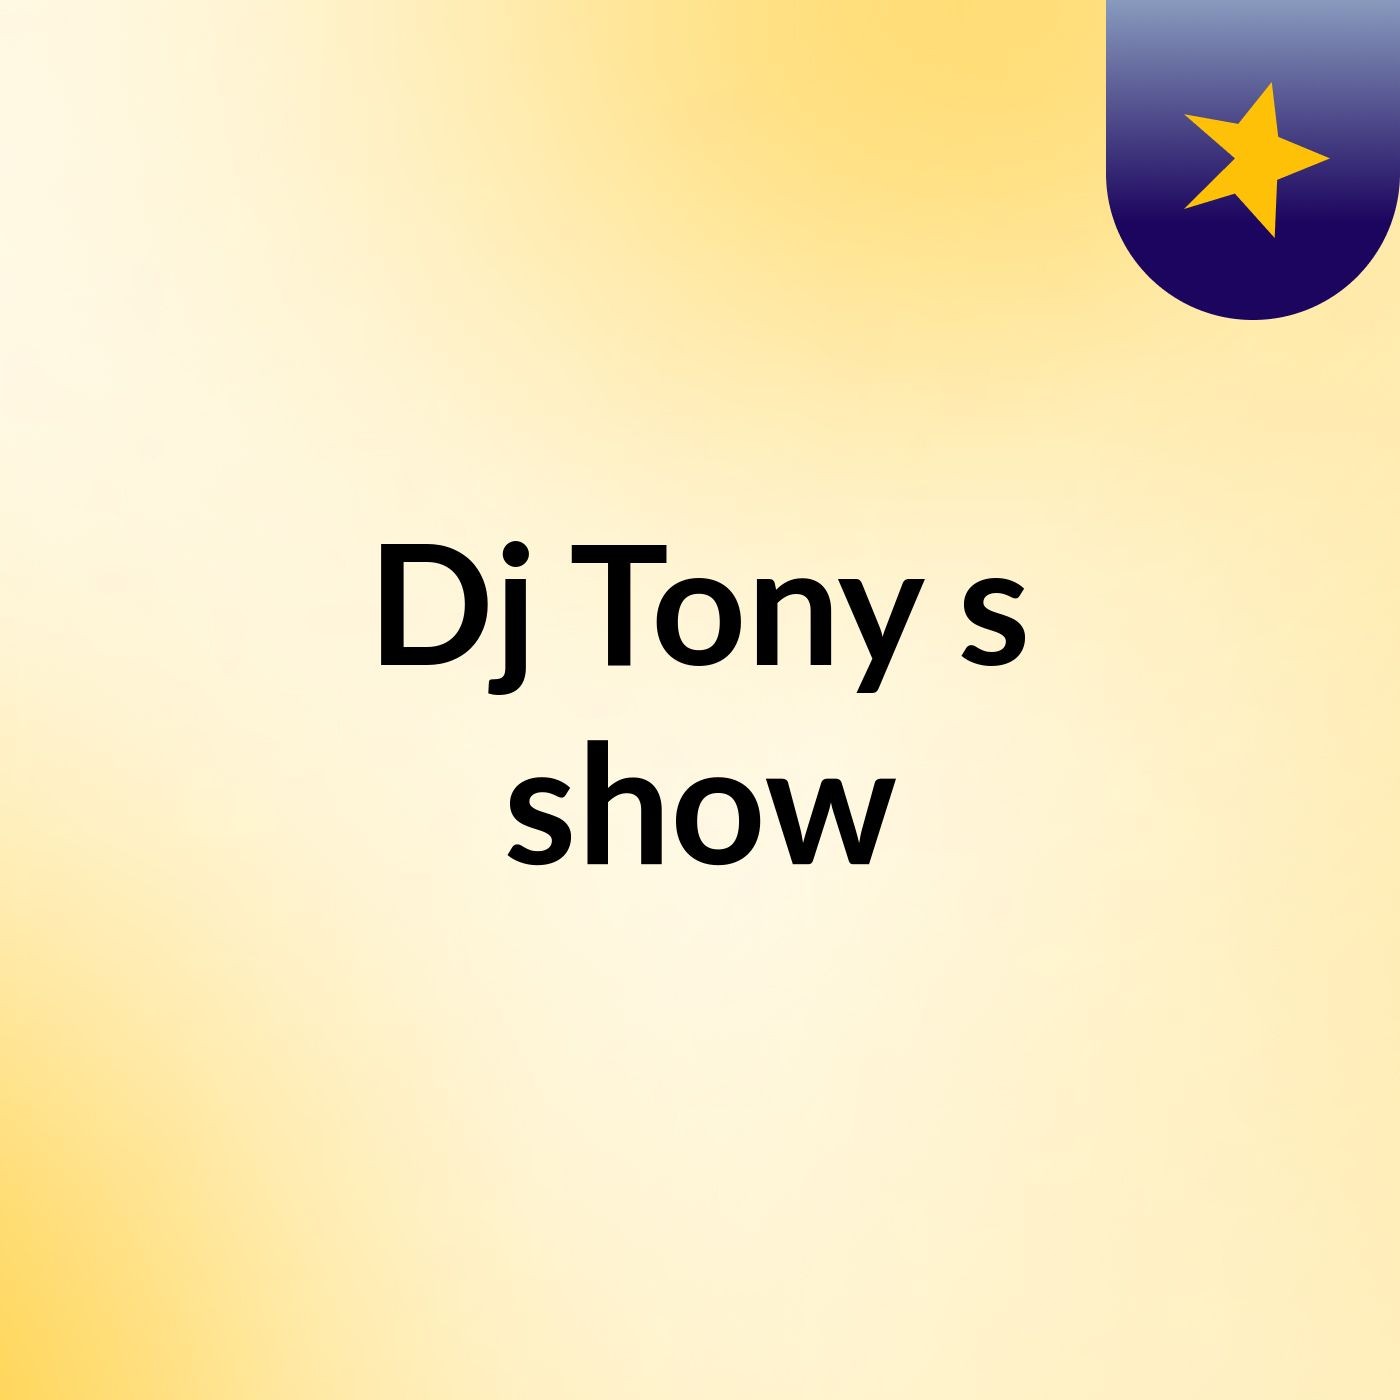 Dj Tony's show